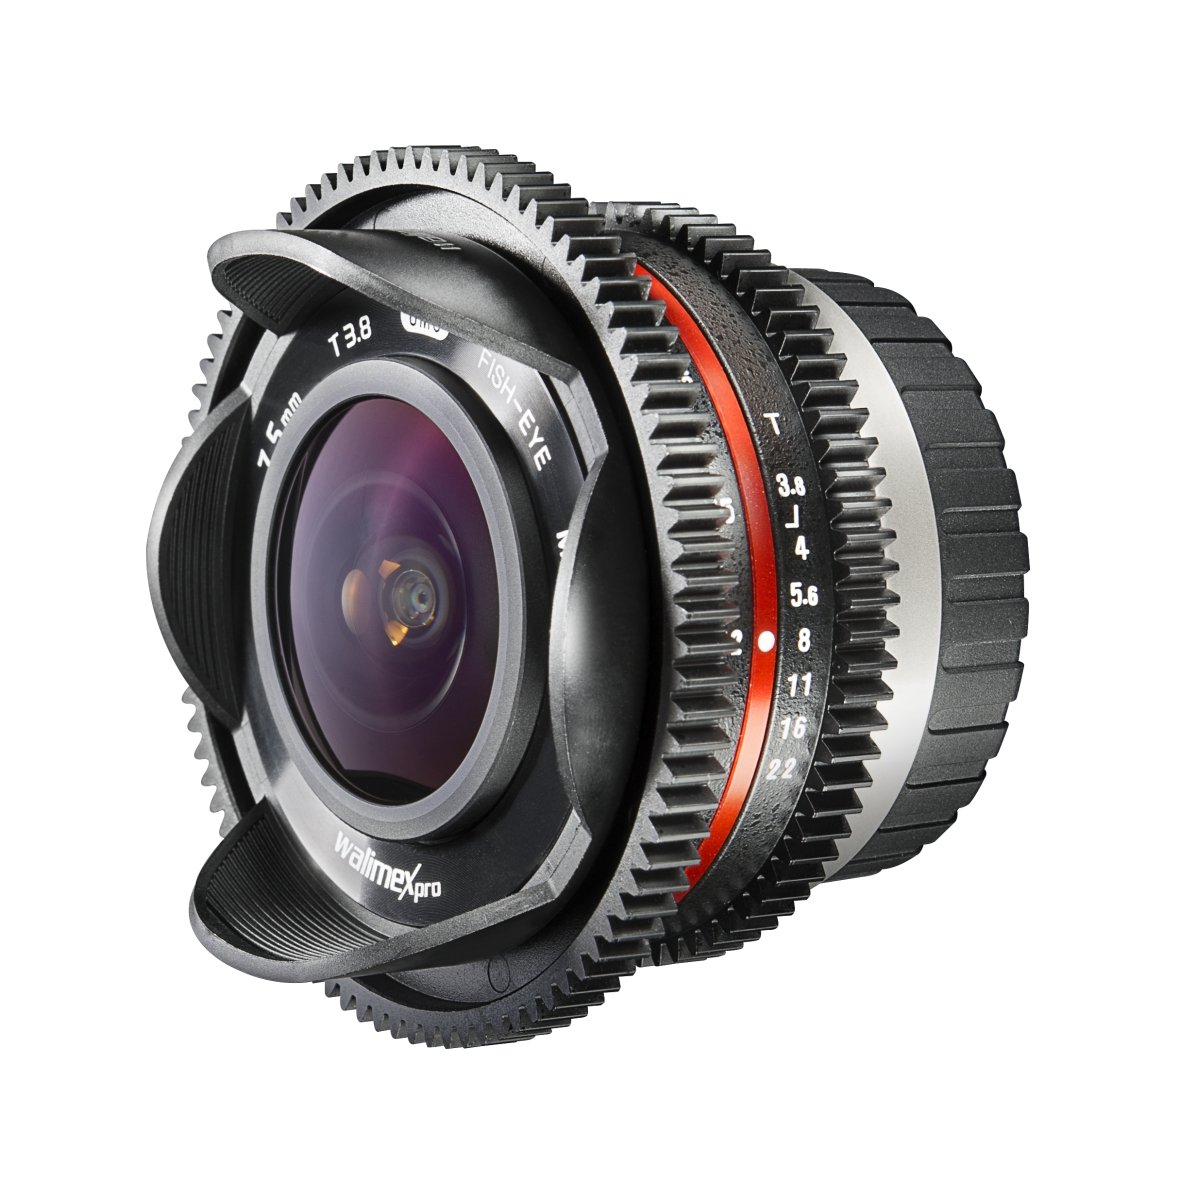 Walimex Pro 7,5mm 1:3,8 VCSC Fish-Eye Foto/Video Objektiv für Micro Four Thirds Objektivbajonett schwarz (manueller Fokus, für APS-C Sensor gerechnet, UMC vergütete Glaslinsen, feste Gegenlichtblende)